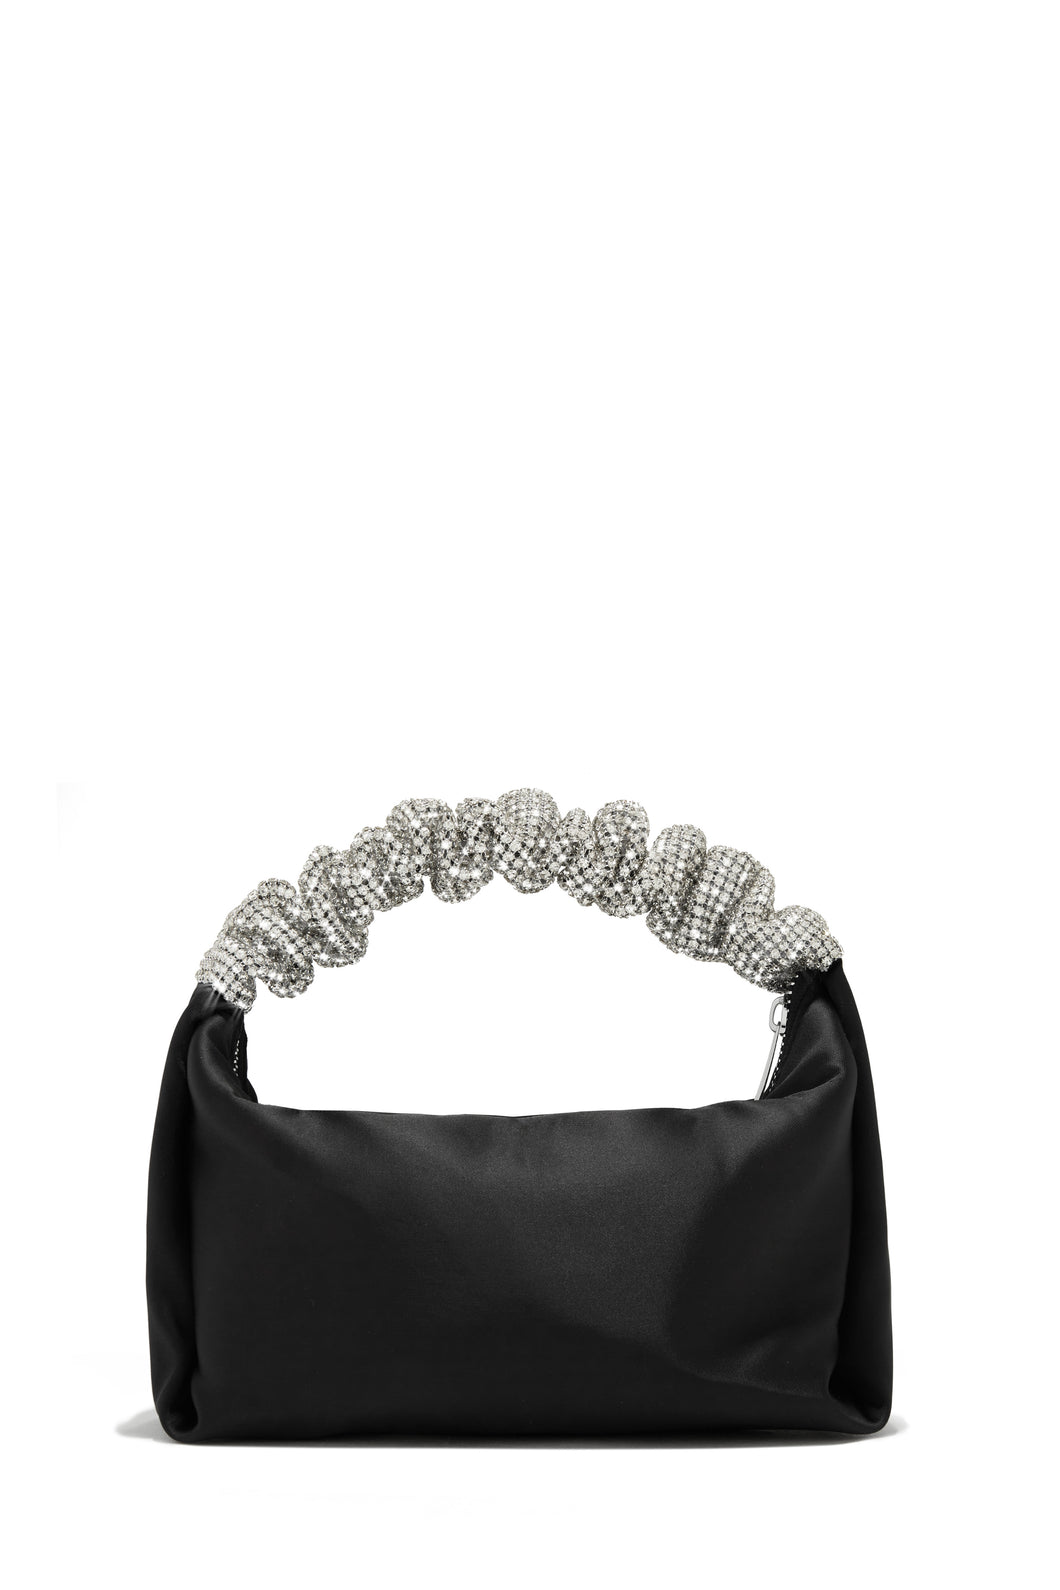 Silver Embellished Glam Bag